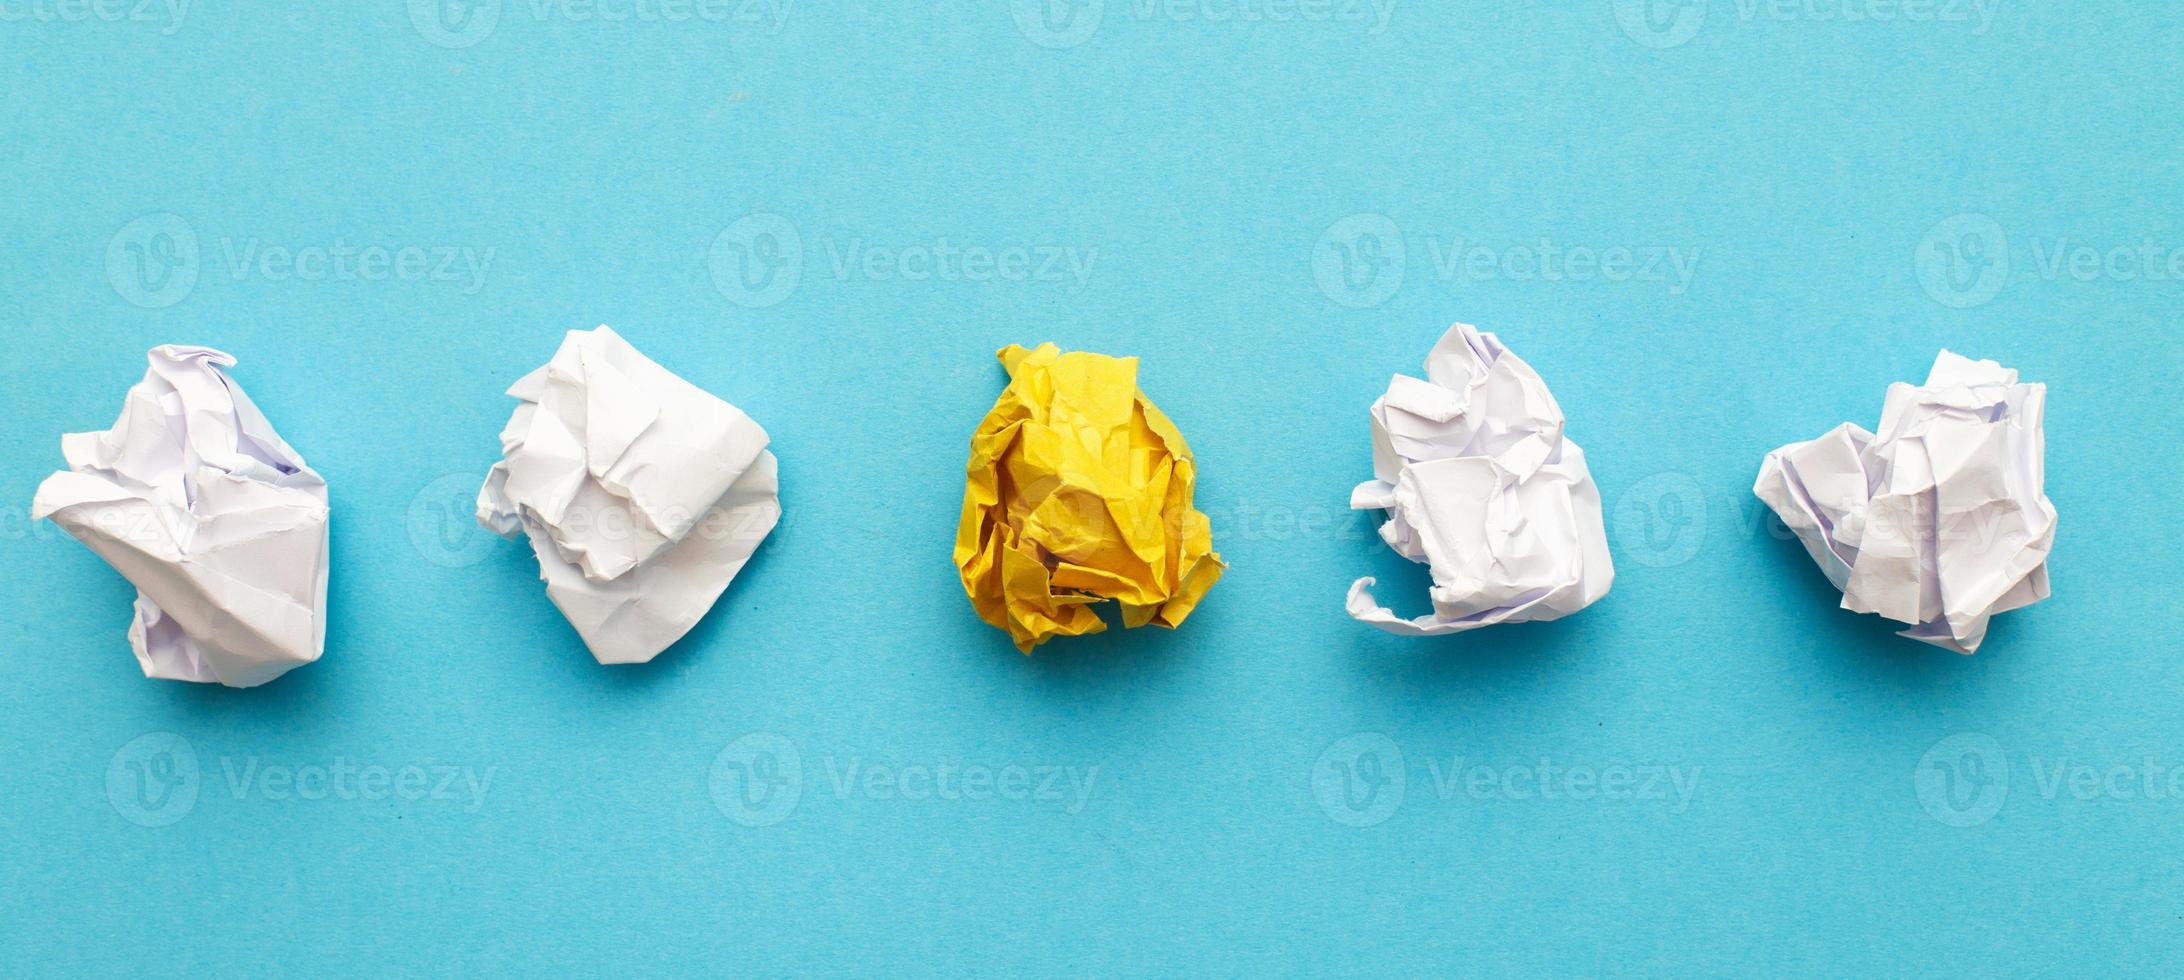 skrynkliga yelllow papper som en begrepp kreativ aning och innovation. baner foto